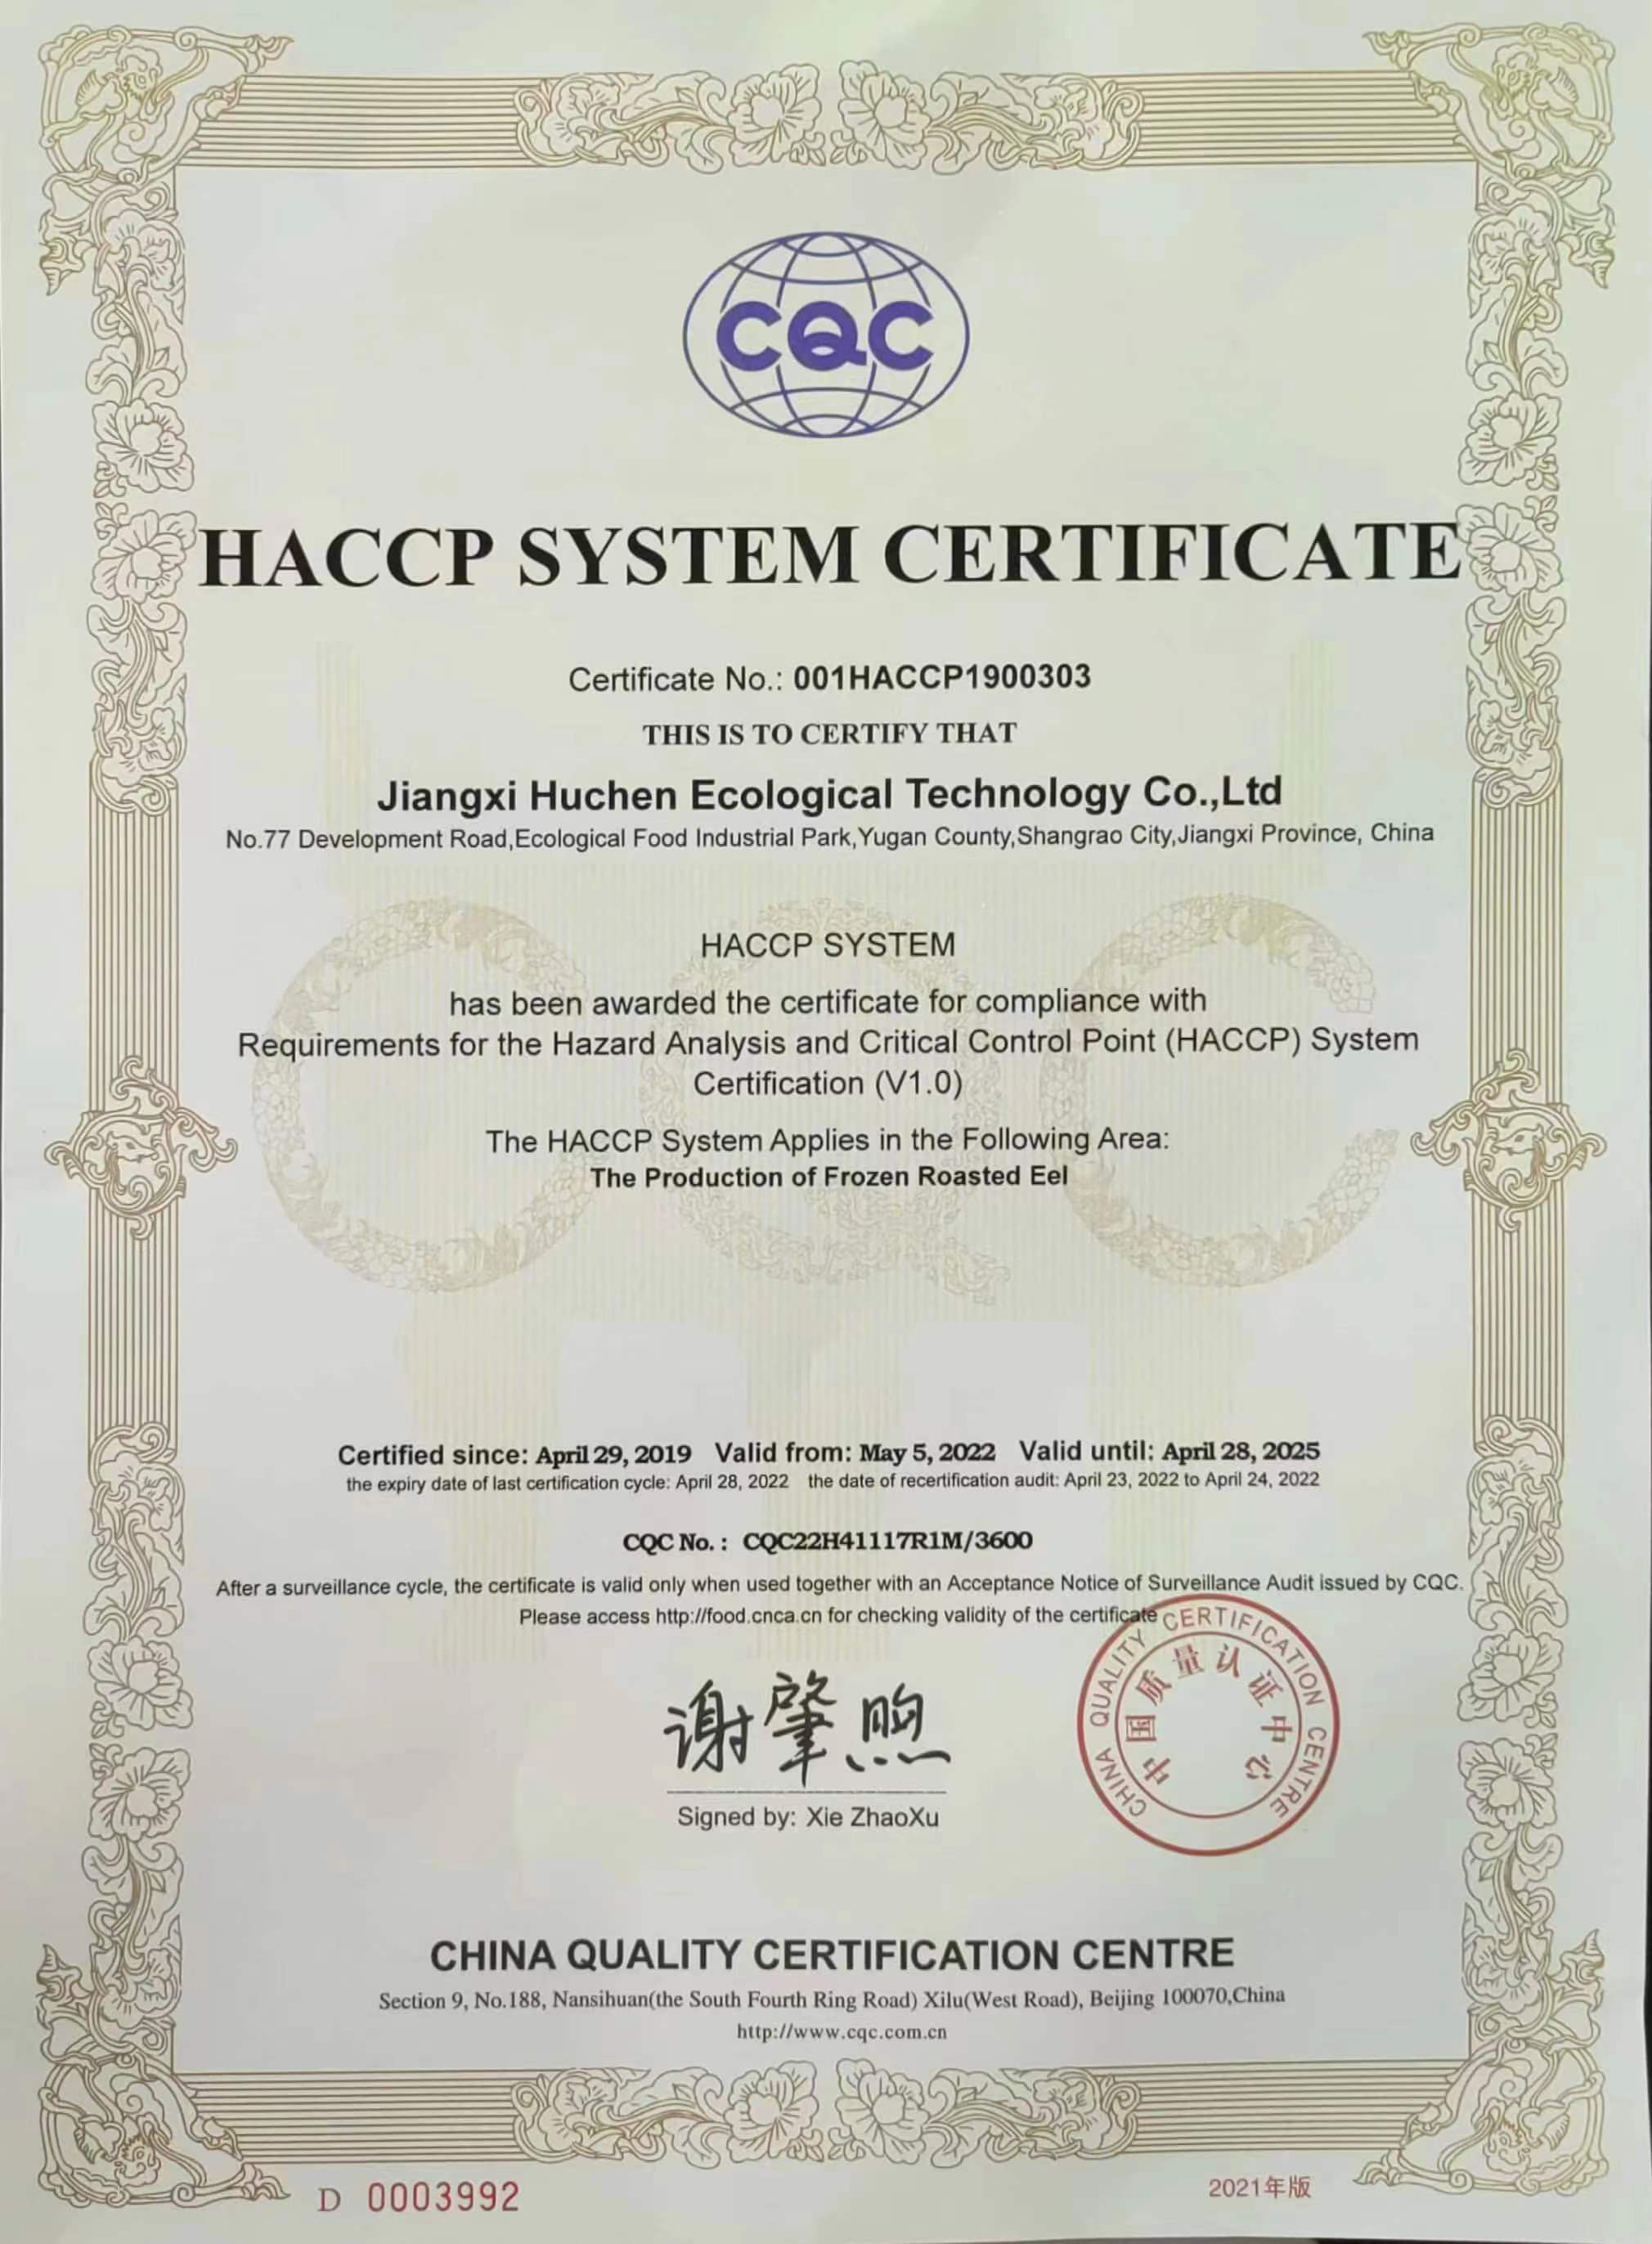 HACCP System Zertifizéierung